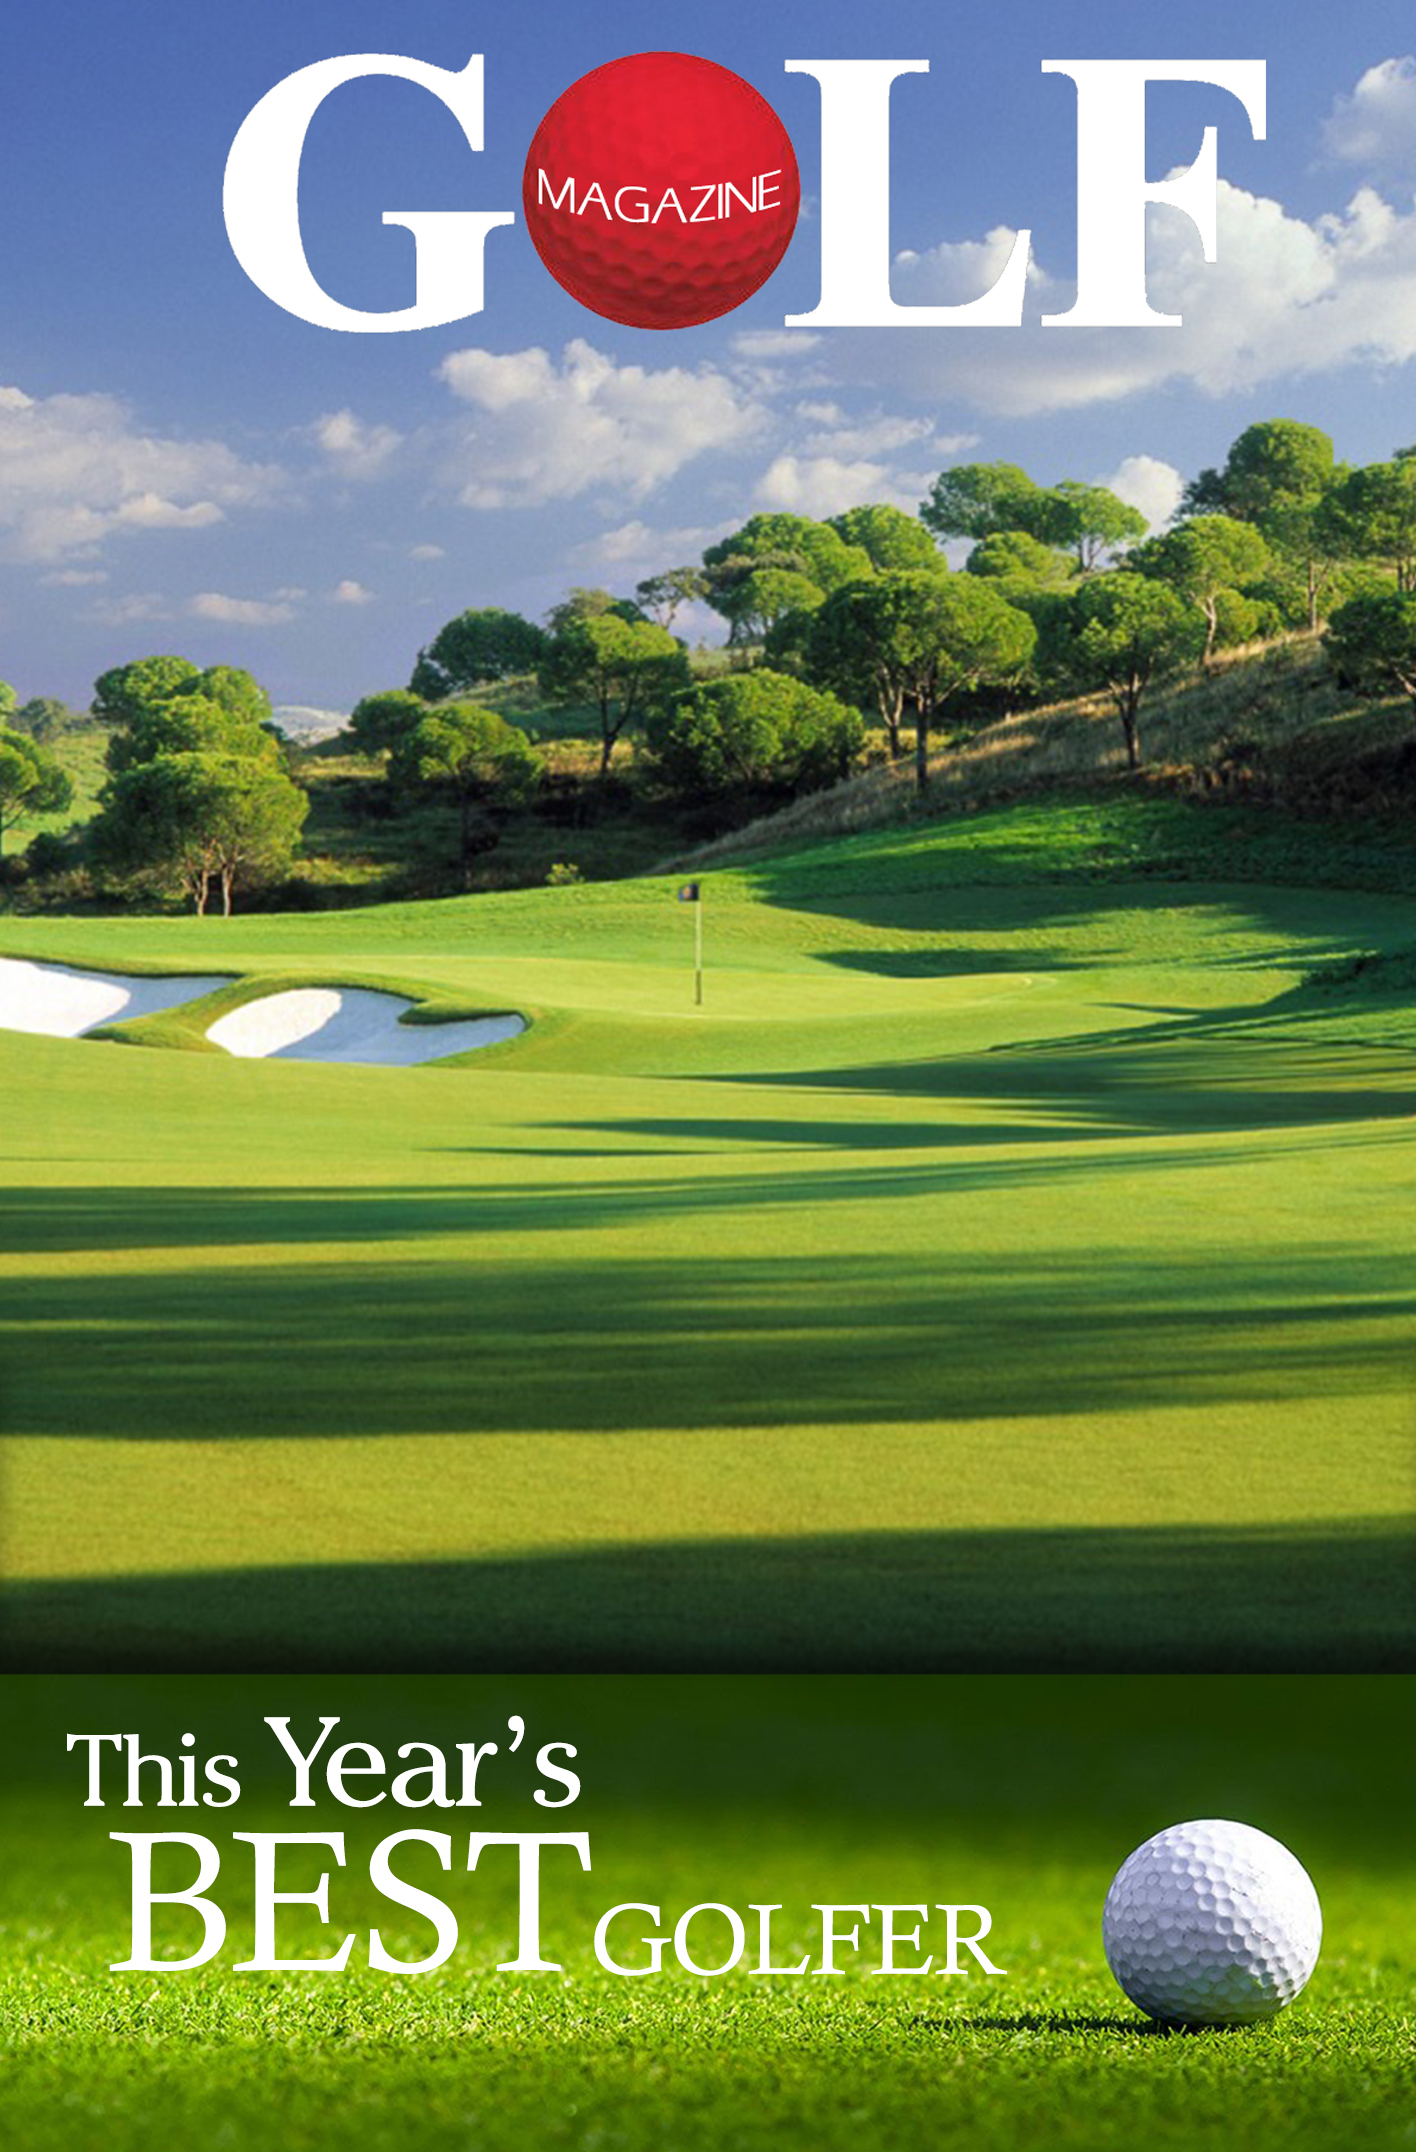 Magazine - Best Golfer